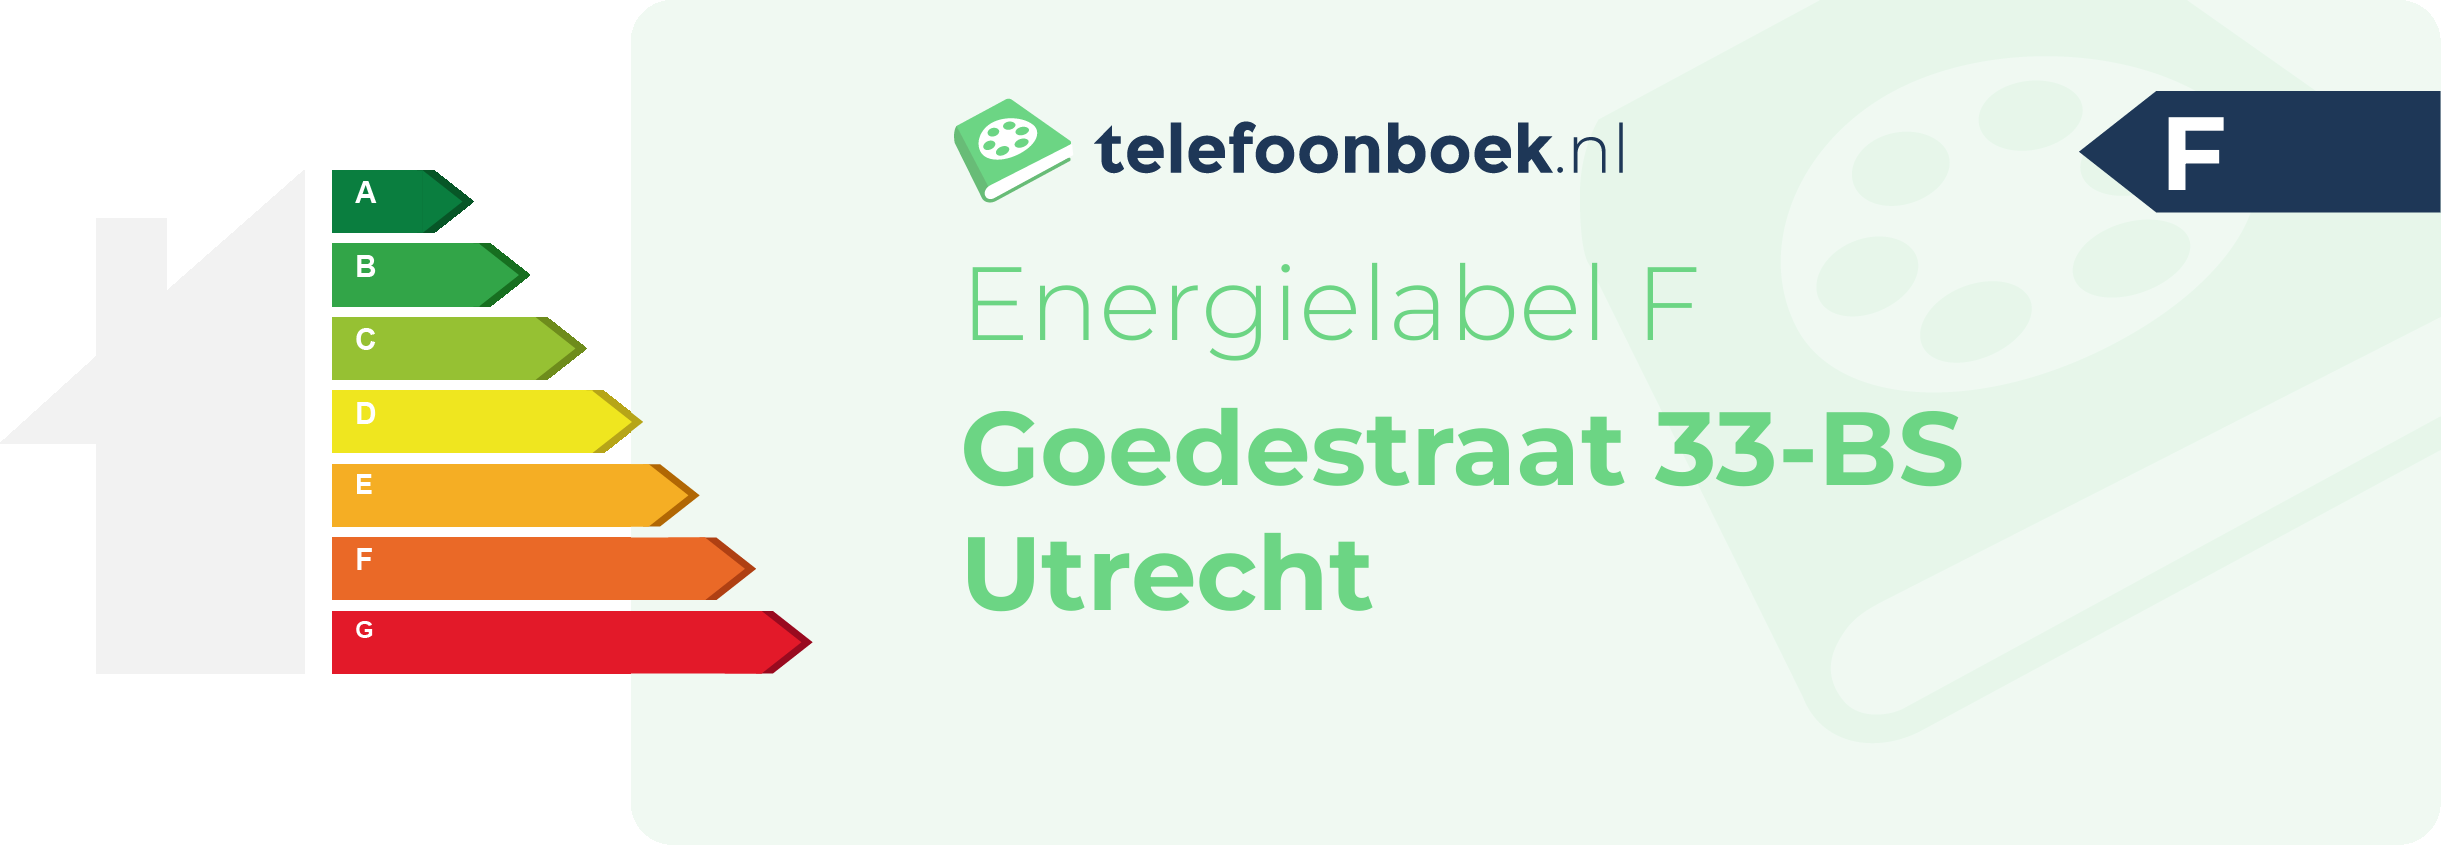 Energielabel Goedestraat 33-BS Utrecht